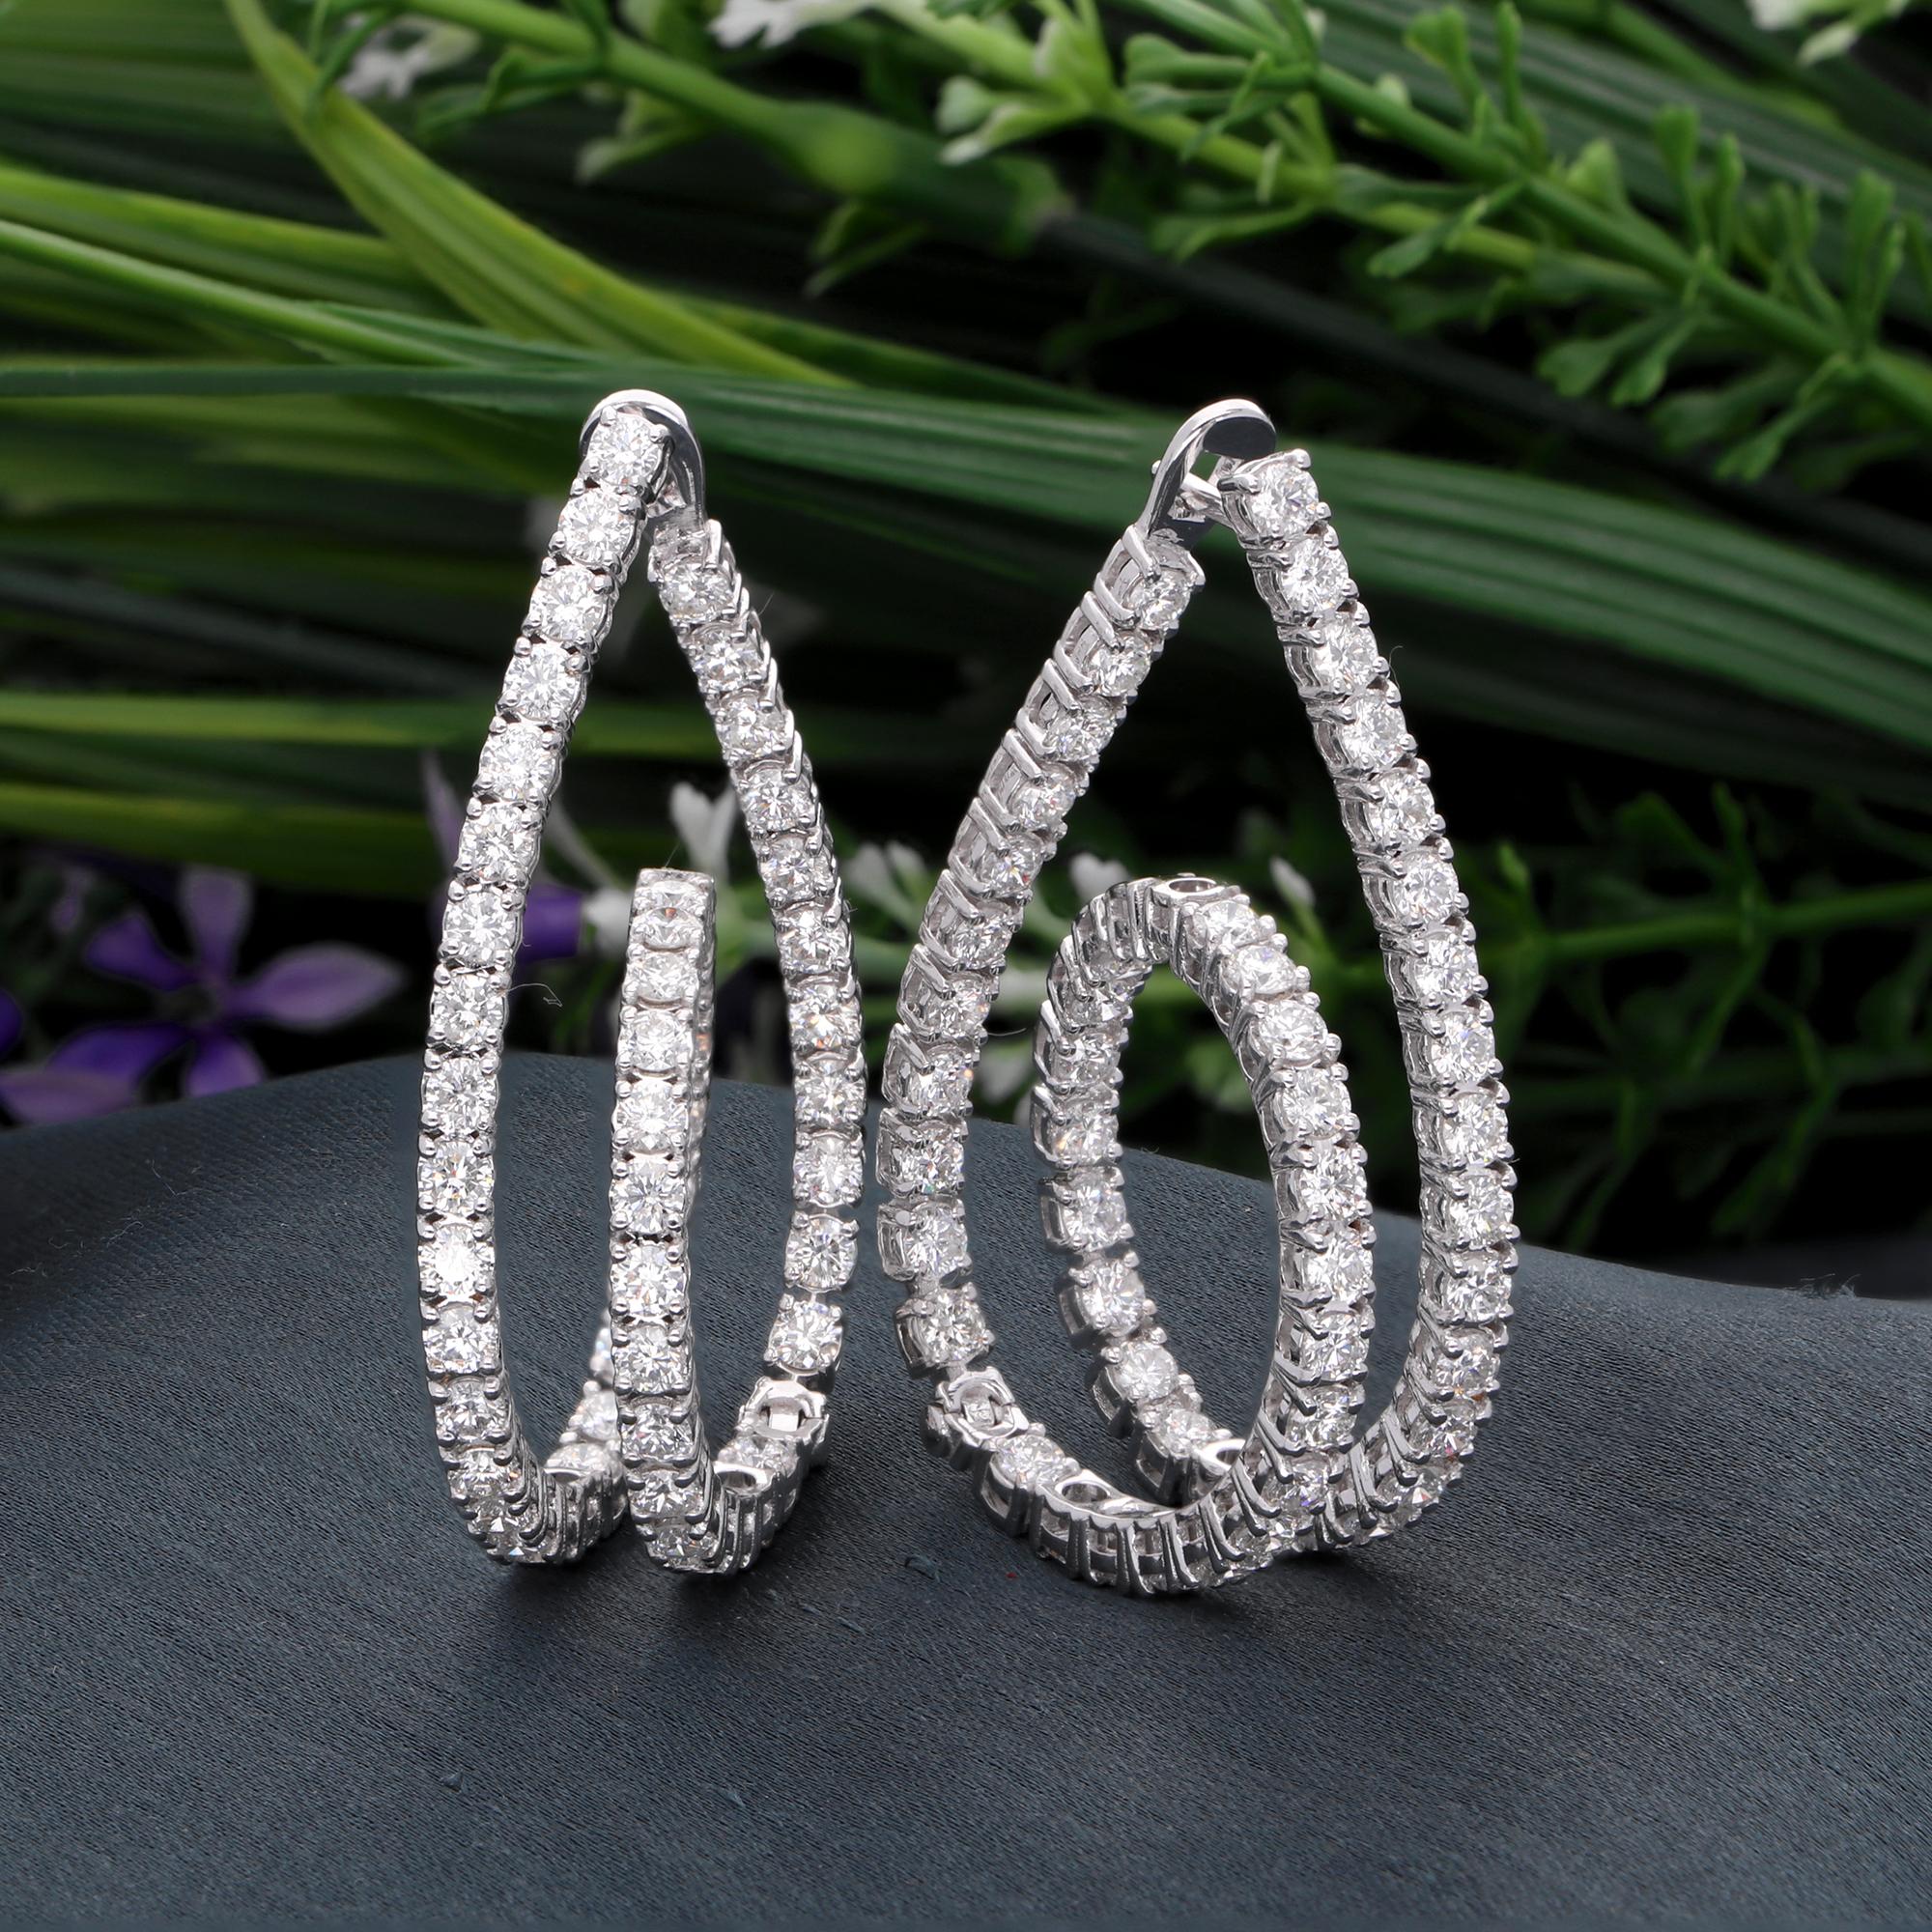 Ces boucles d'oreilles Huggie en diamant avec 6,22 ct. Les diamants véritables sont une promesse de perfection et de pureté. Ces anneaux sont sertis en or blanc massif 18k. Vous pouvez choisir ces boucles d'oreilles en 10k/14k/18k, or rose/or